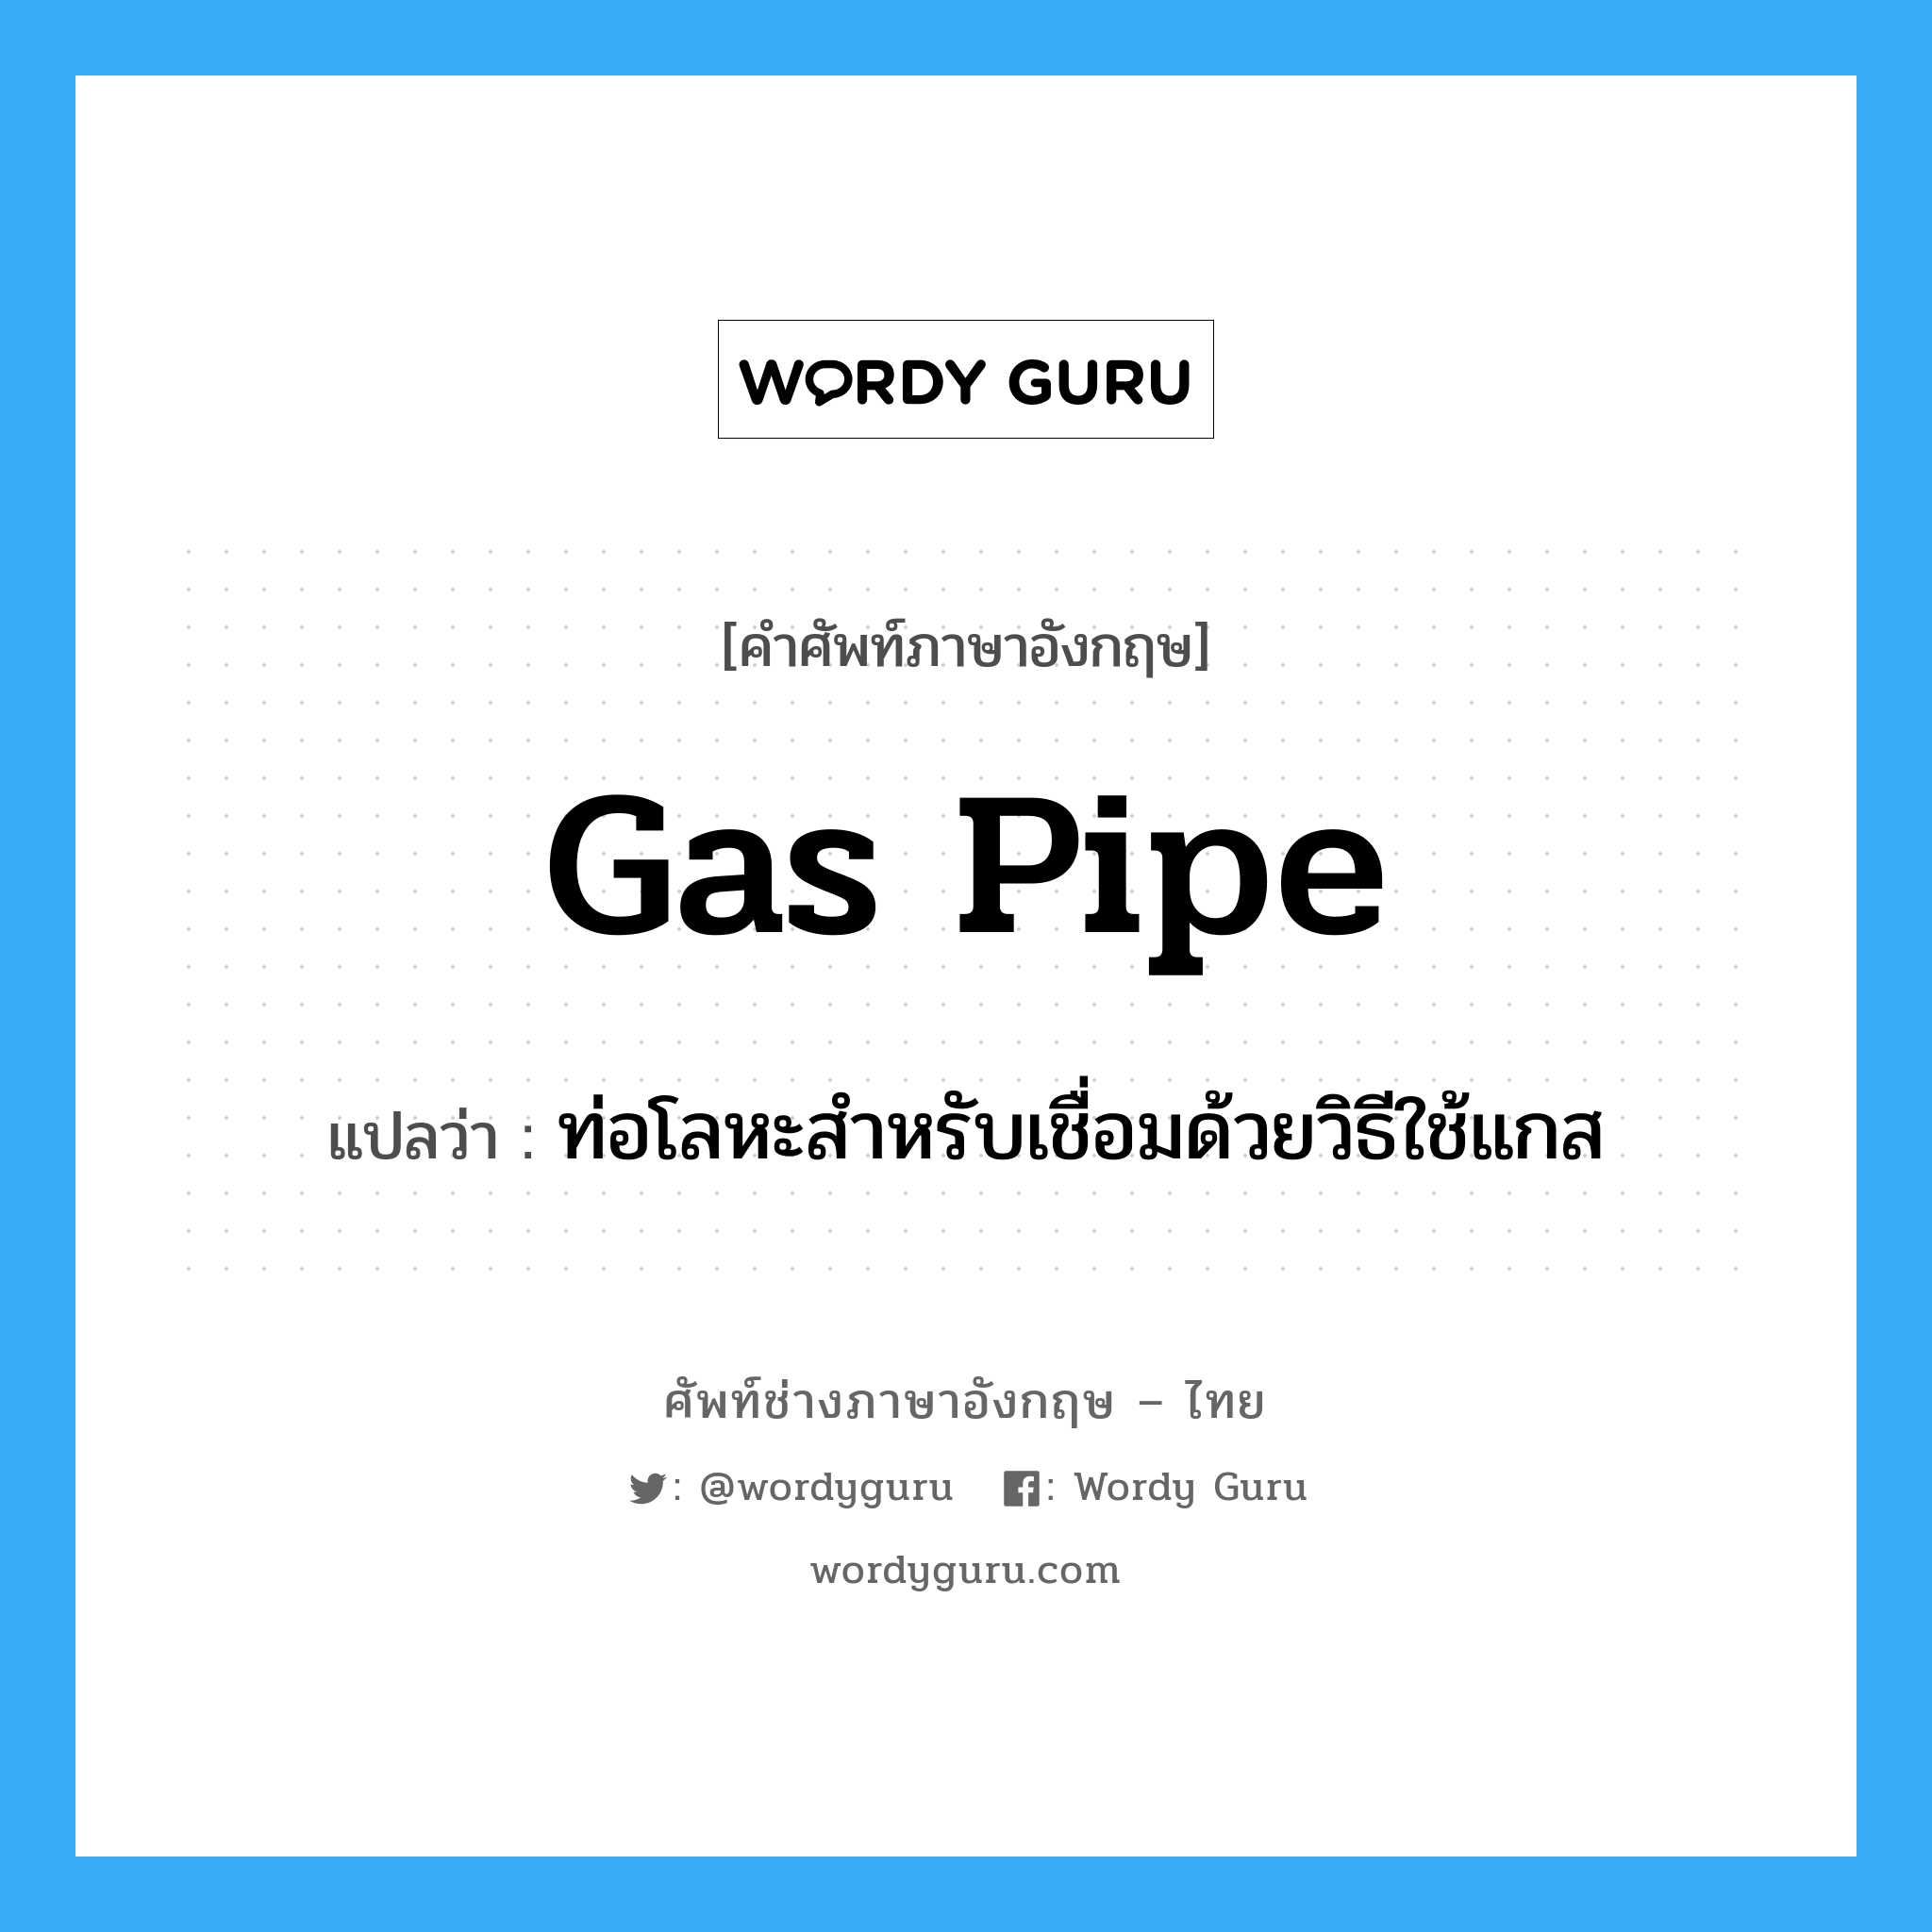 gas pipe แปลว่า?, คำศัพท์ช่างภาษาอังกฤษ - ไทย gas pipe คำศัพท์ภาษาอังกฤษ gas pipe แปลว่า ท่อโลหะสำหรับเชื่อมด้วยวิธีใช้แกส